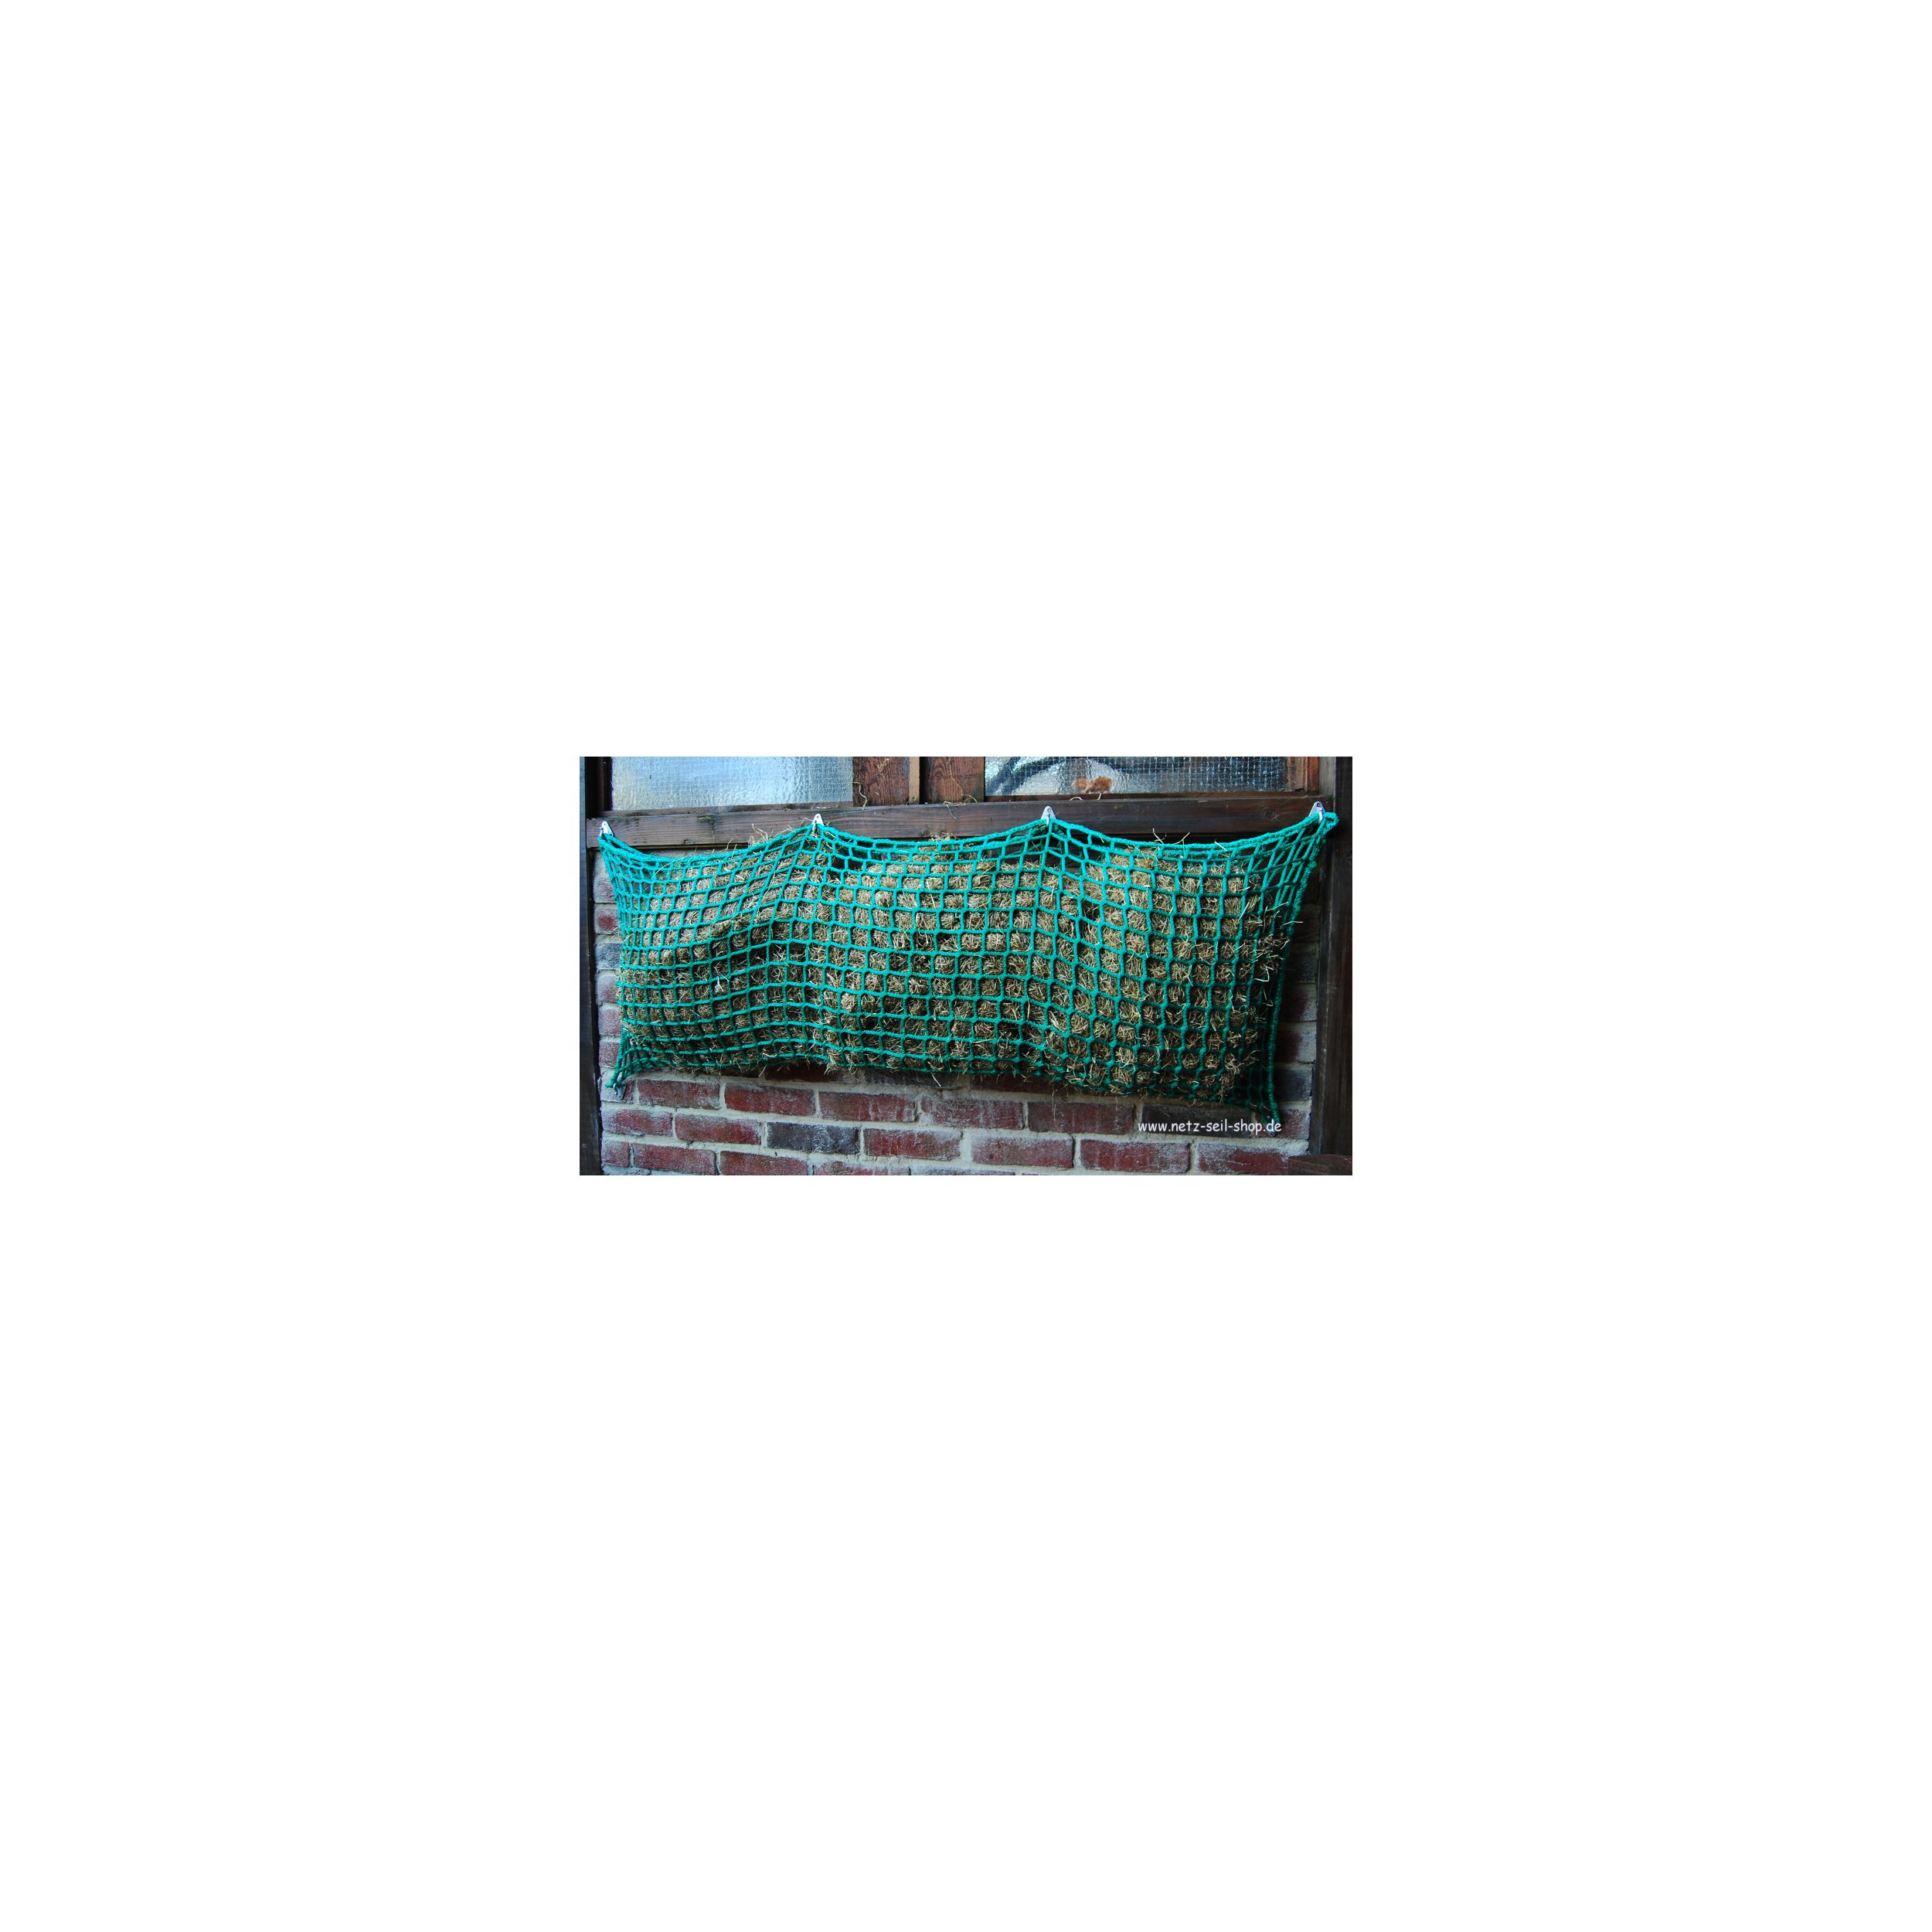 Hooi net in zakvorm, 1,40 m breed, hoogte 1,00 m Ø 5 mm garen dikte, # 45 mm maas